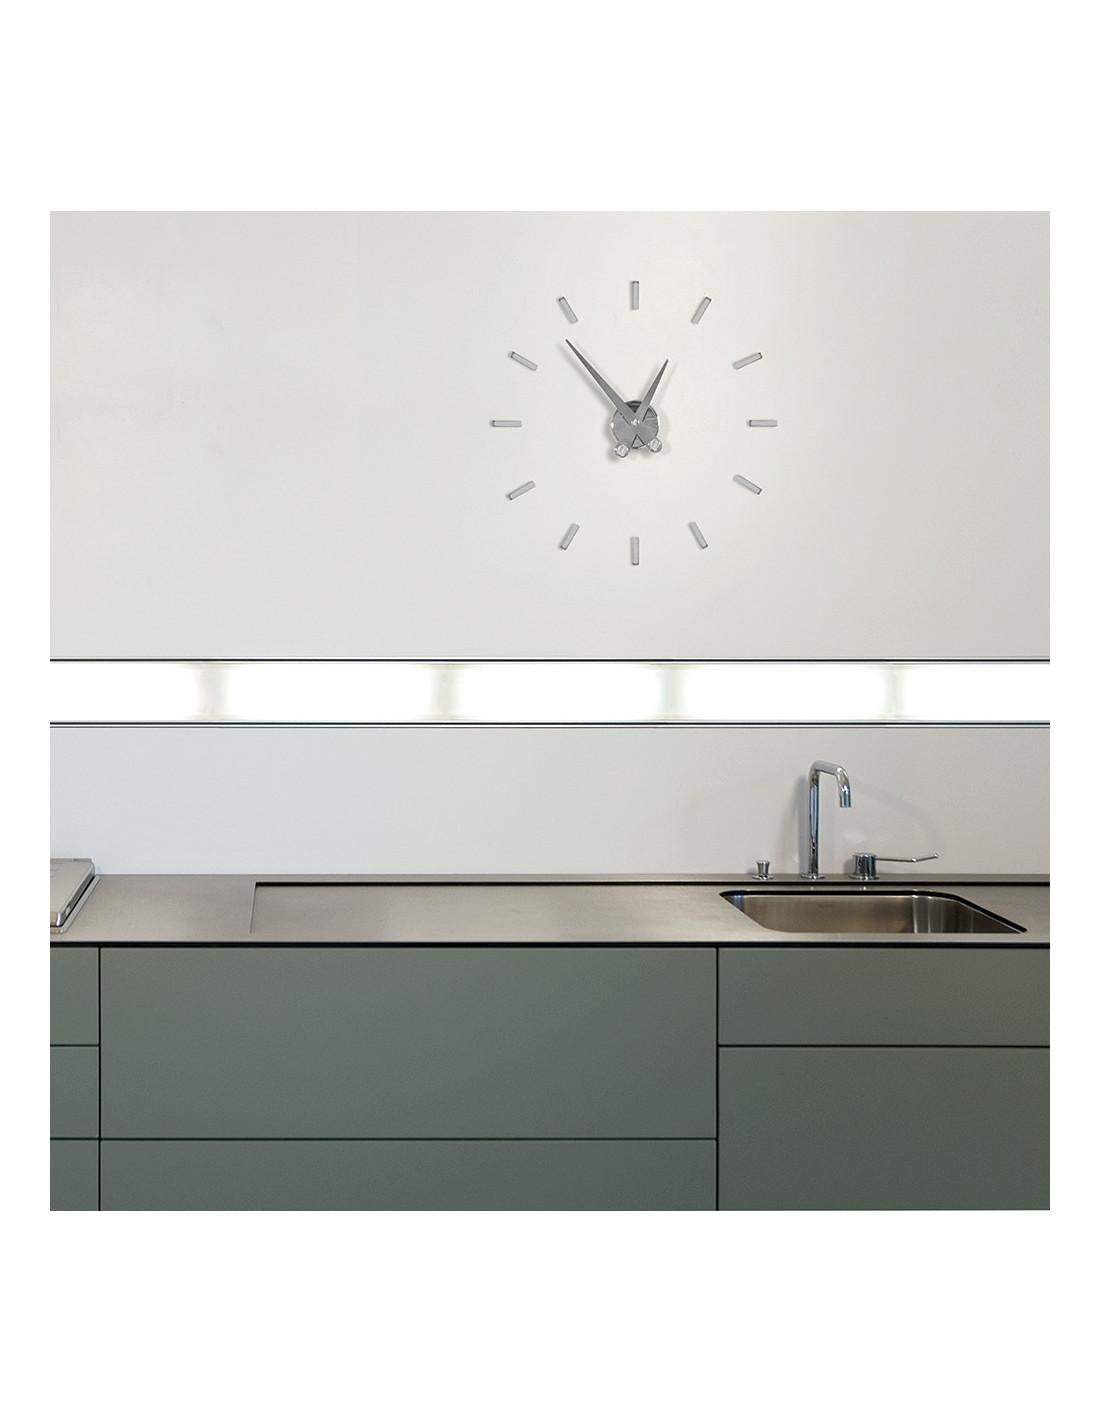 Contemporary Puntos Suspensivos 12 i Wall Clock For Sale